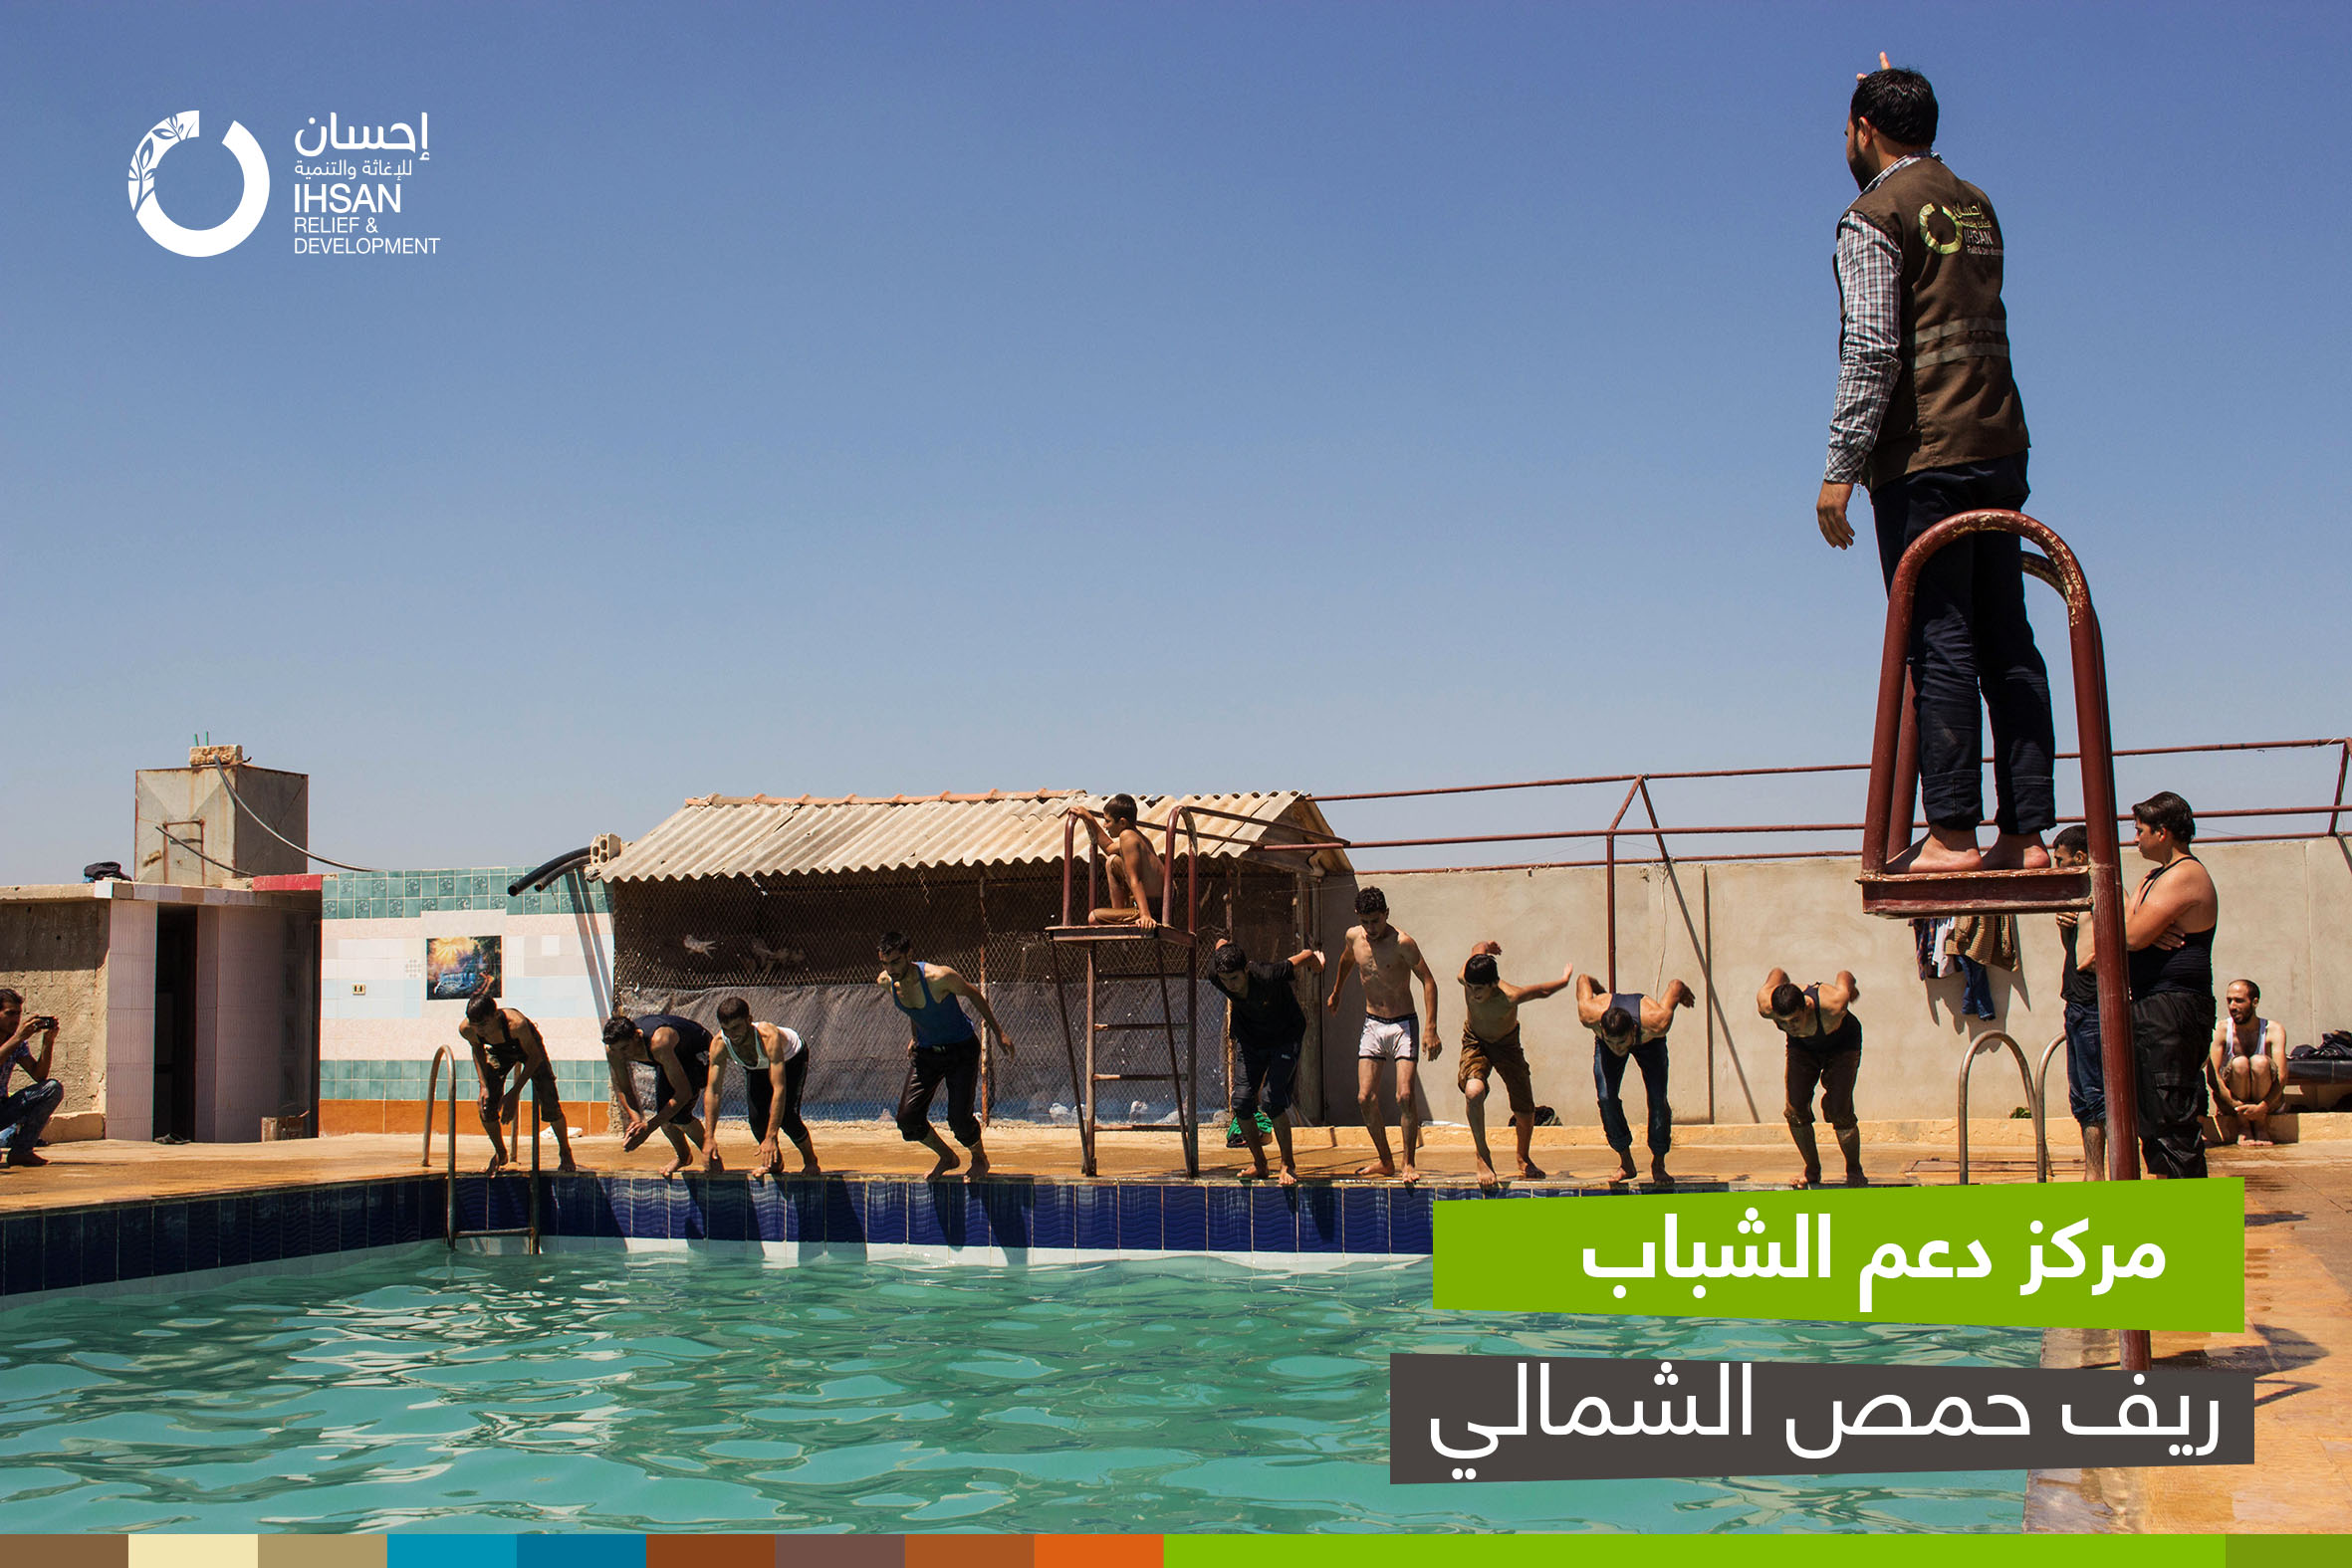 Homs’un Kuzey kırsalında İhsan Gençlik Destek Merkezi’nde gençler için rekreasyonel etkinlikler